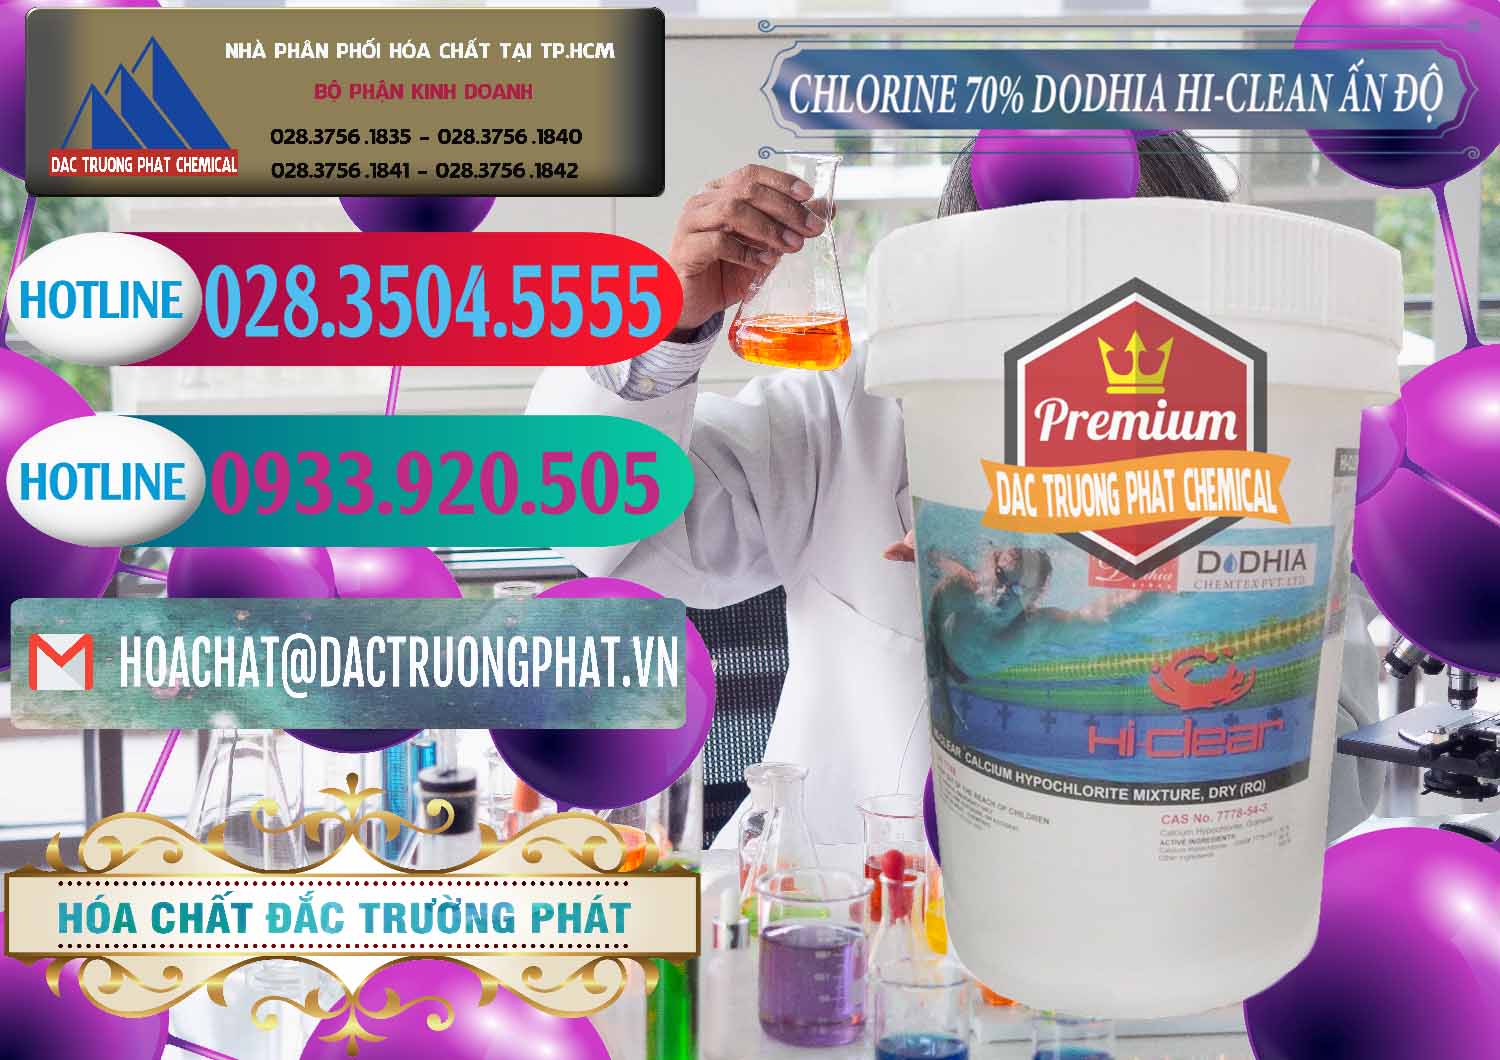 Công ty cung cấp và bán Chlorine – Clorin 70% Dodhia Hi-Clean Ấn Độ India - 0214 - Công ty chuyên phân phối và bán hóa chất tại TP.HCM - truongphat.vn